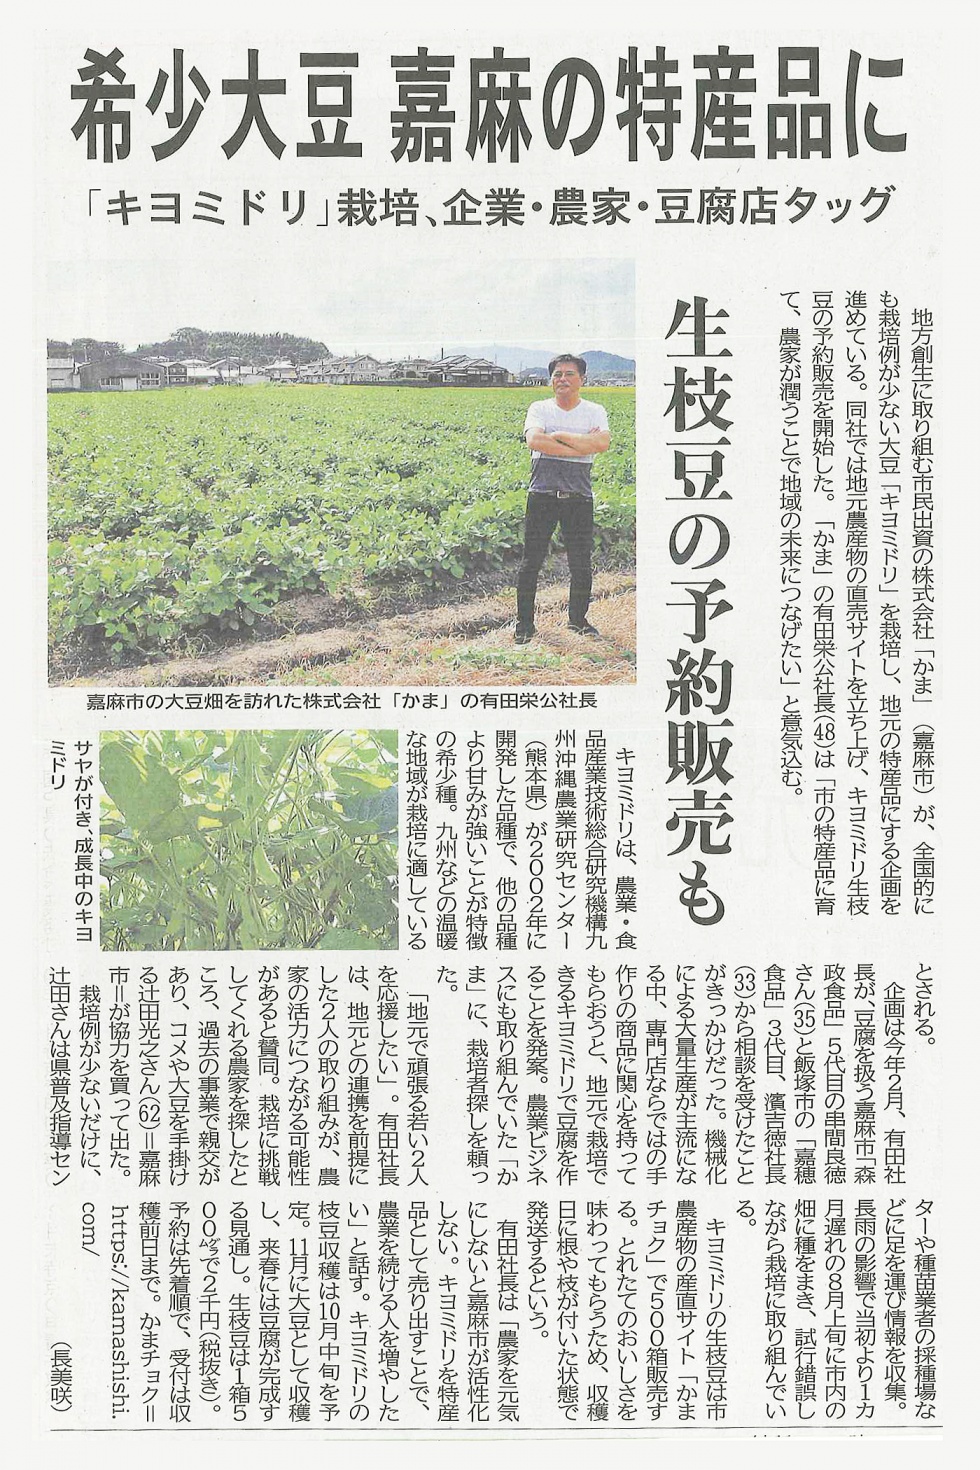 キヨミドリ生枝豆栽培に関する西日本新聞掲載記事